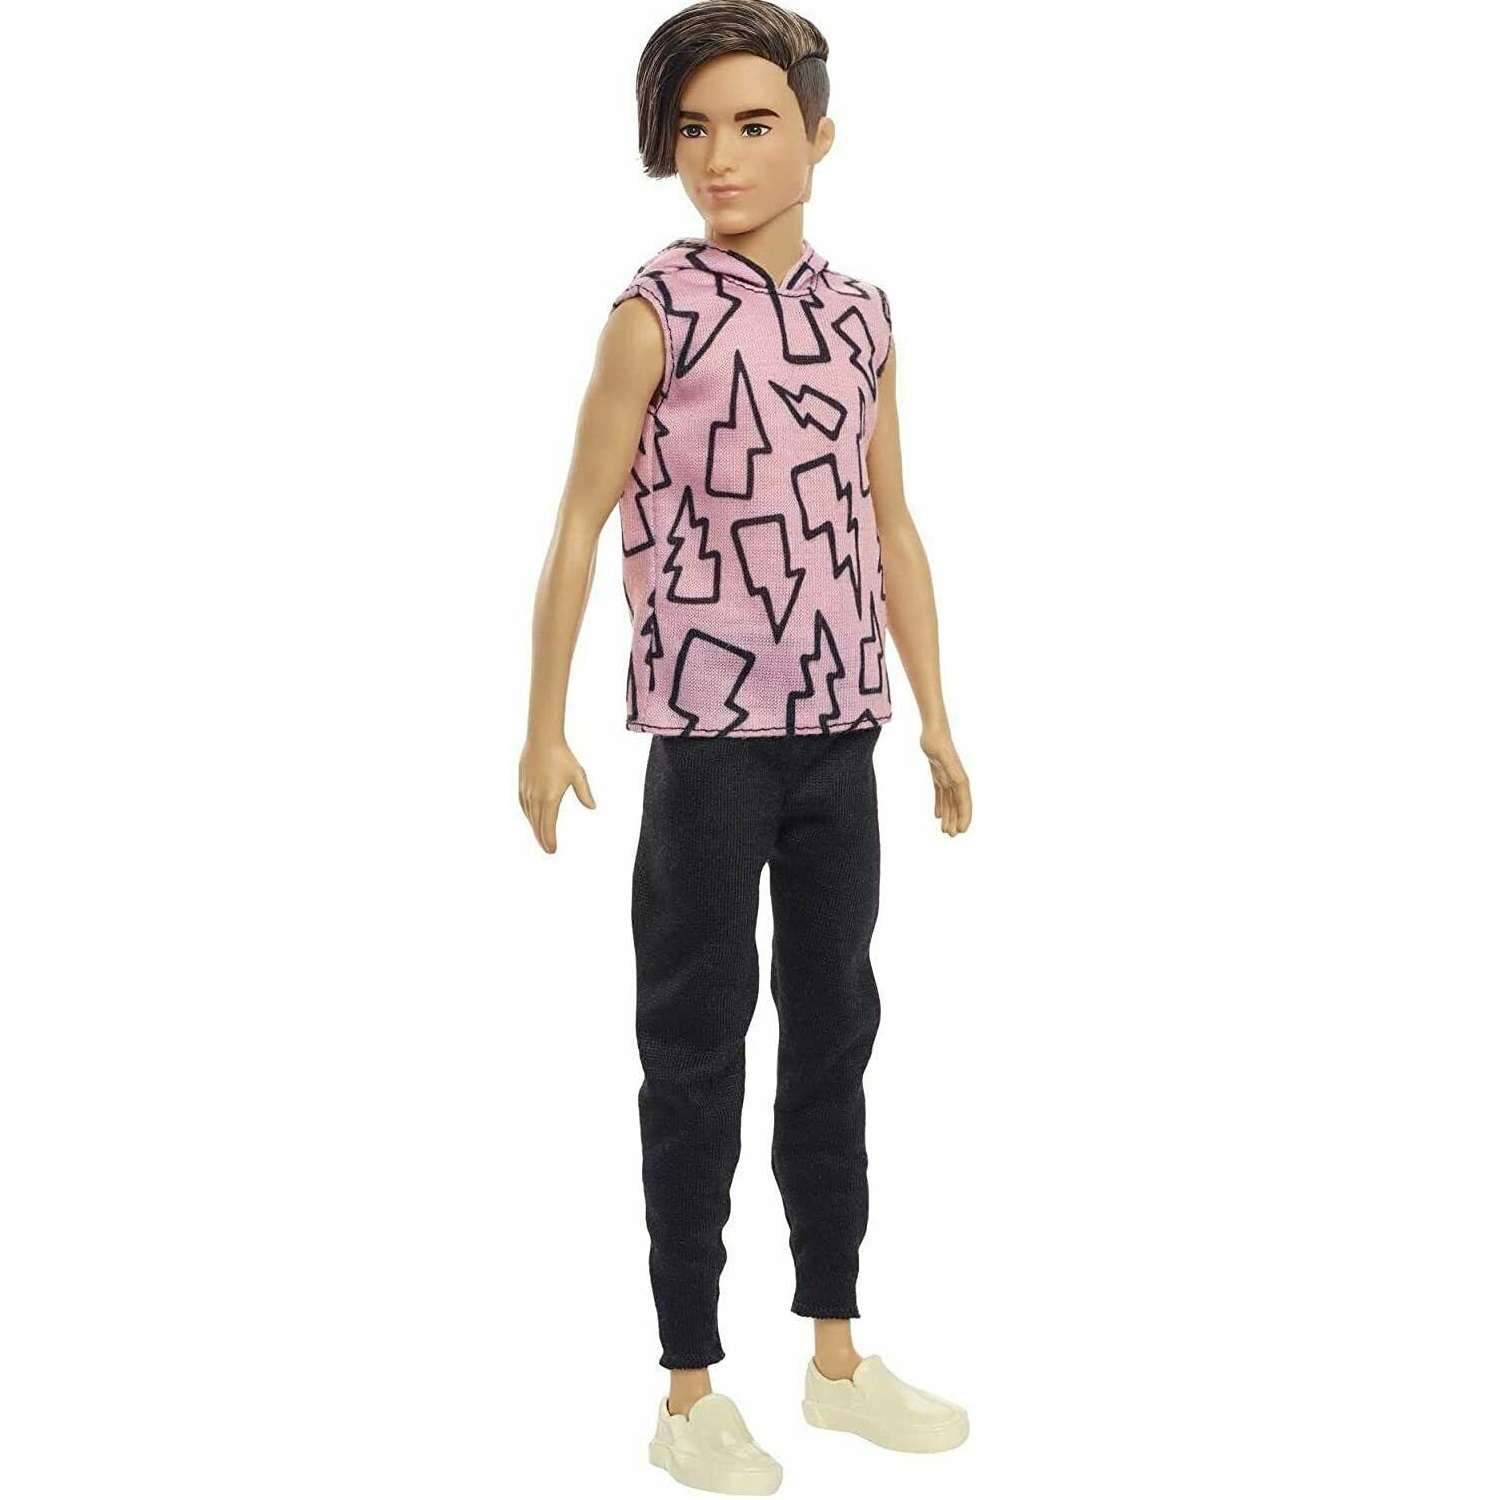 Кукла Barbie Игра с модой Кен HBV25 DWK44 - фото 2